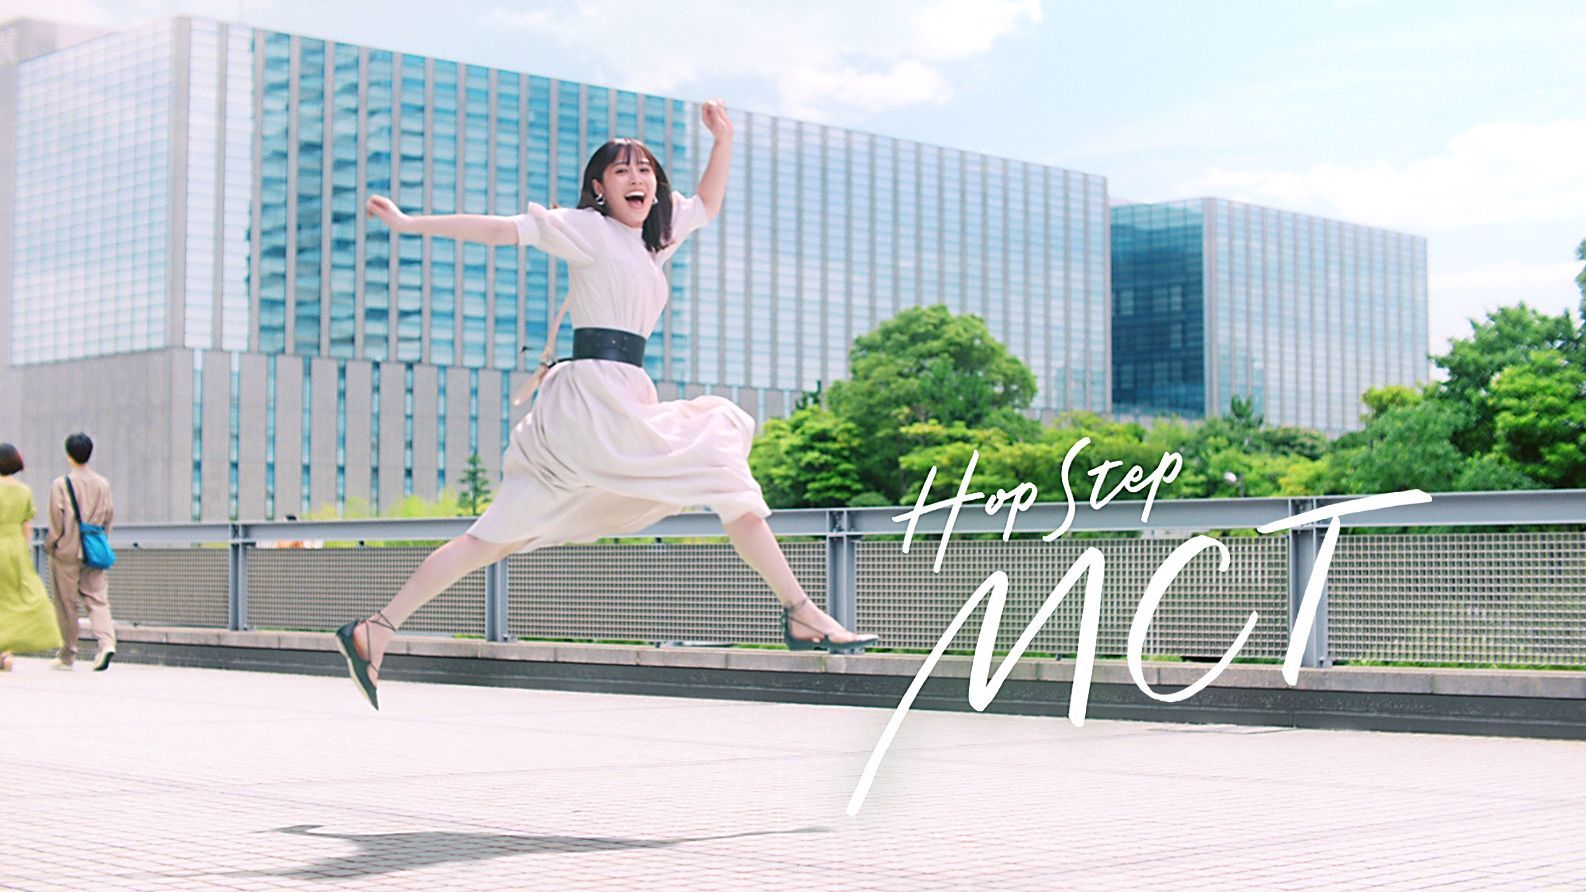 広瀬アリス 日清オイリオ新CM『Hop Step MCT 毎日が運動だ。階段』篇